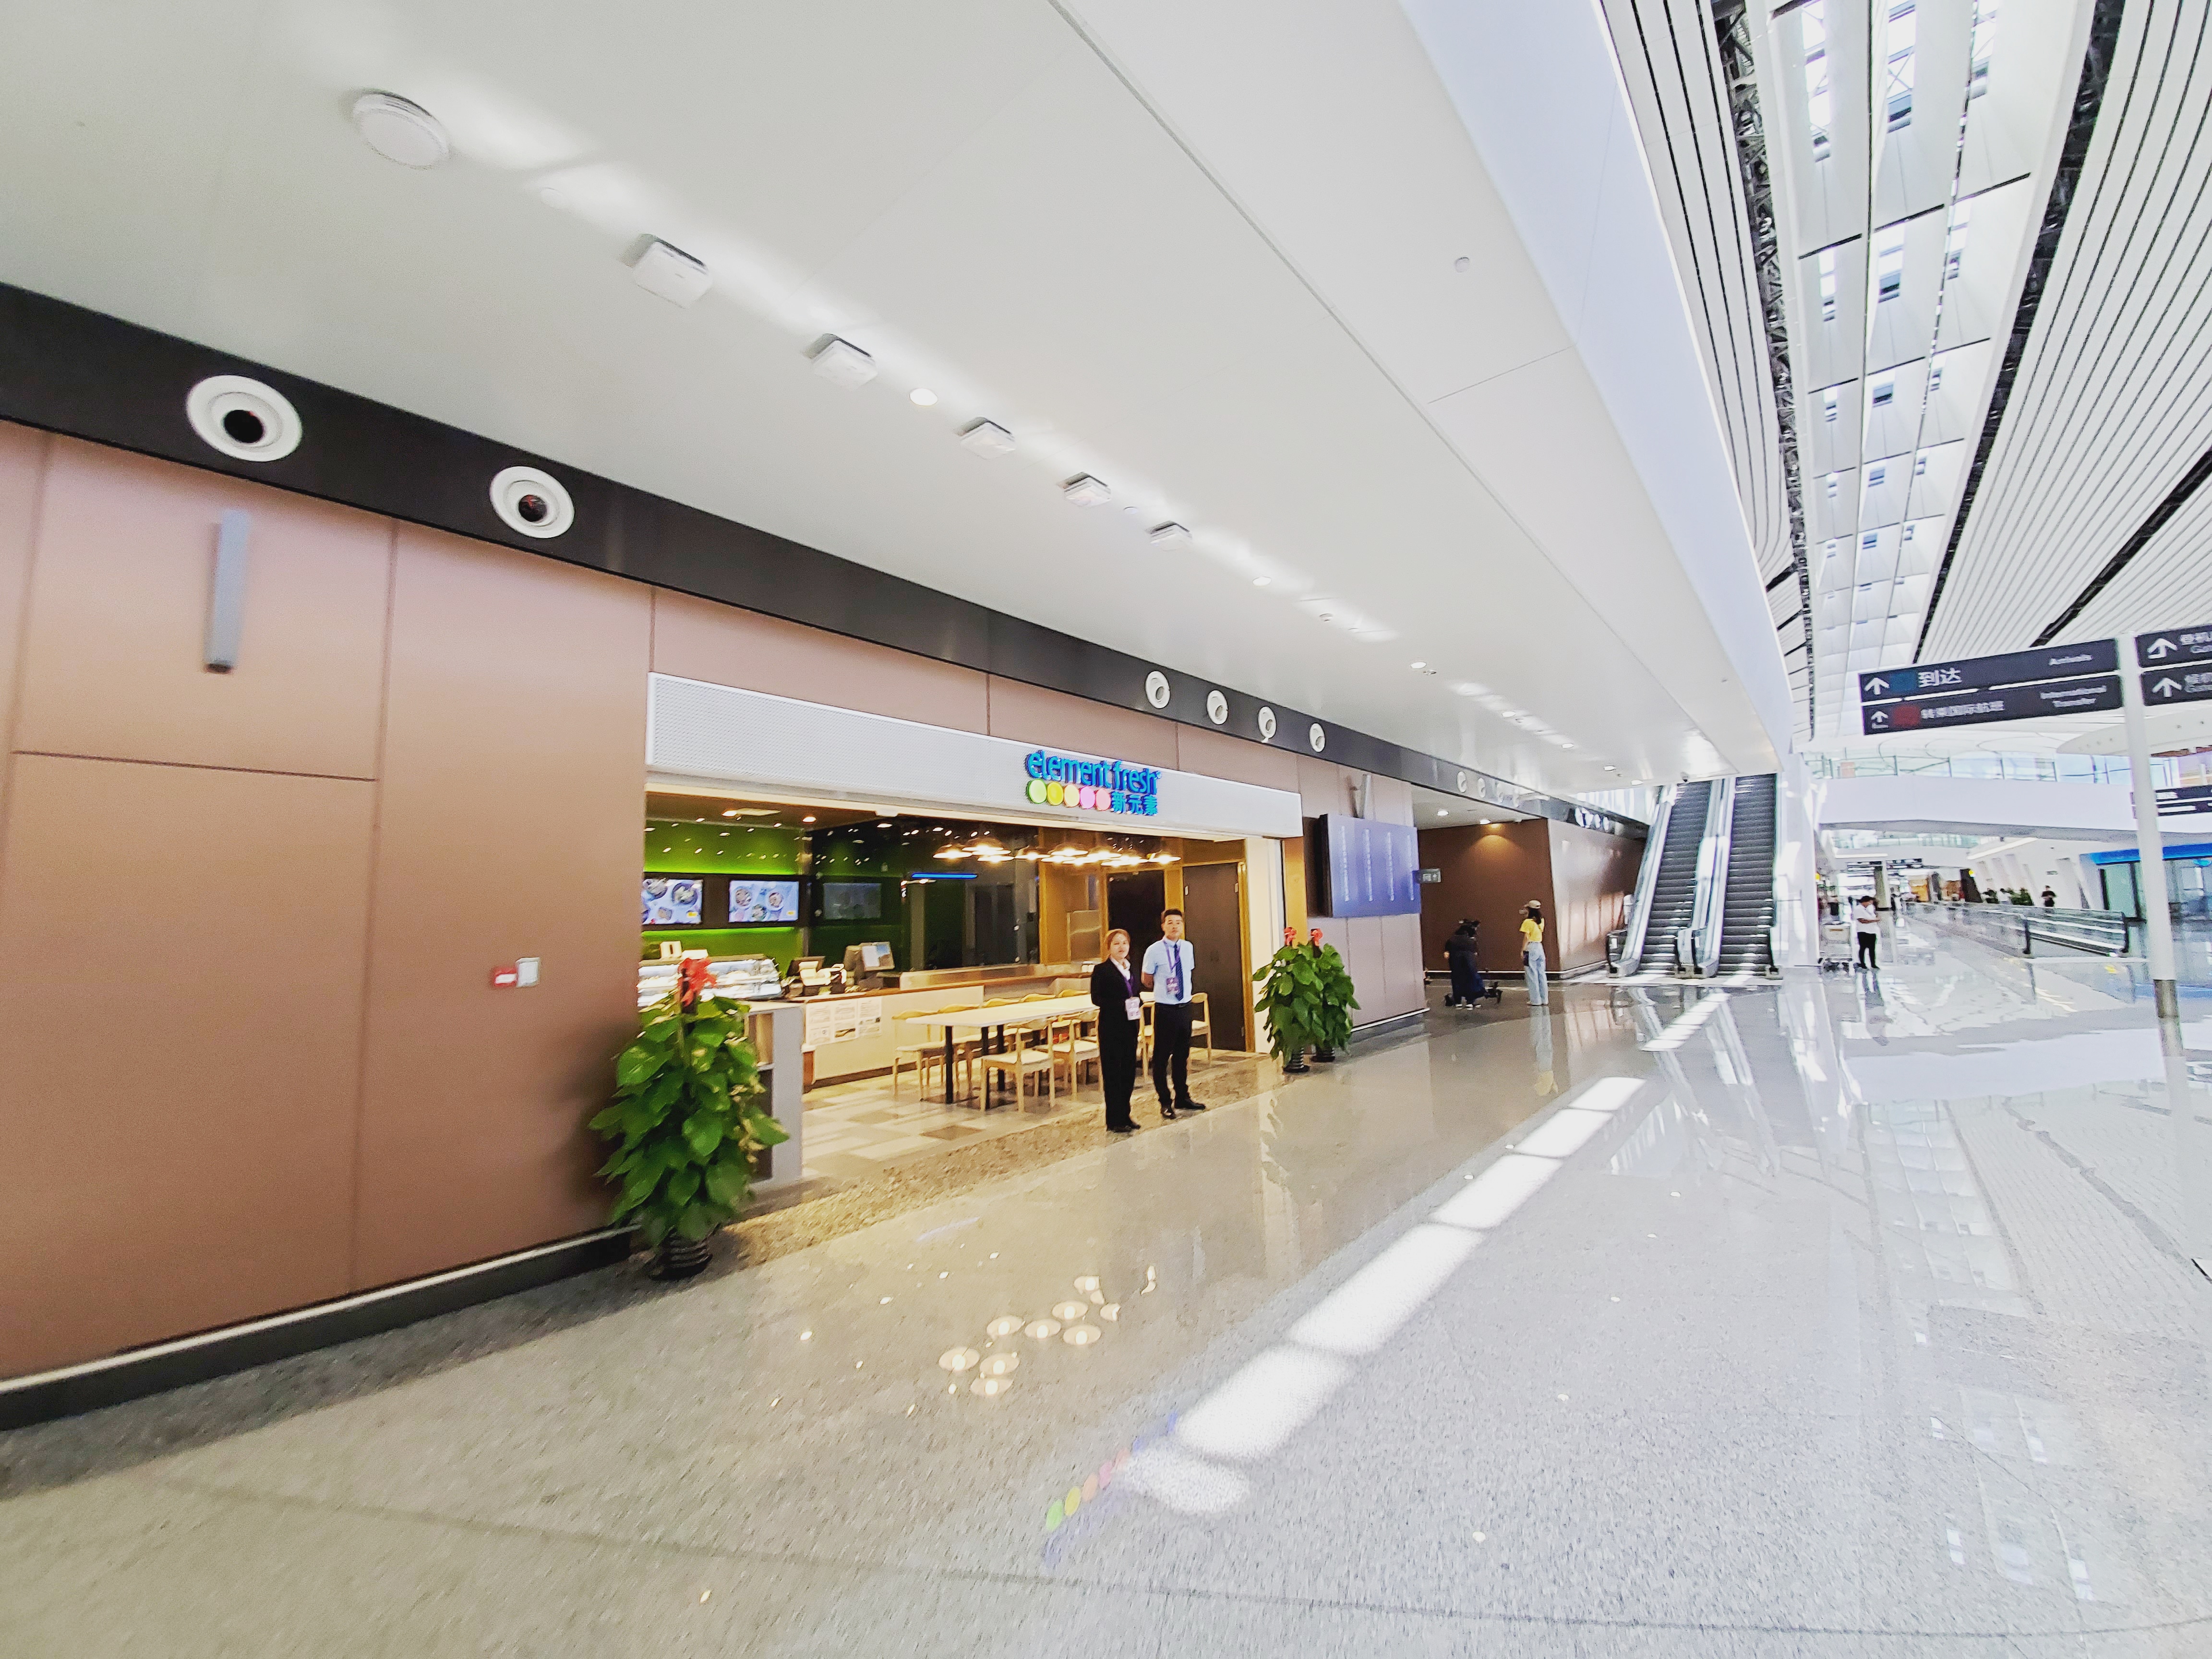 北京大兴国际机场商铺概览三,这些商家你想到了吗